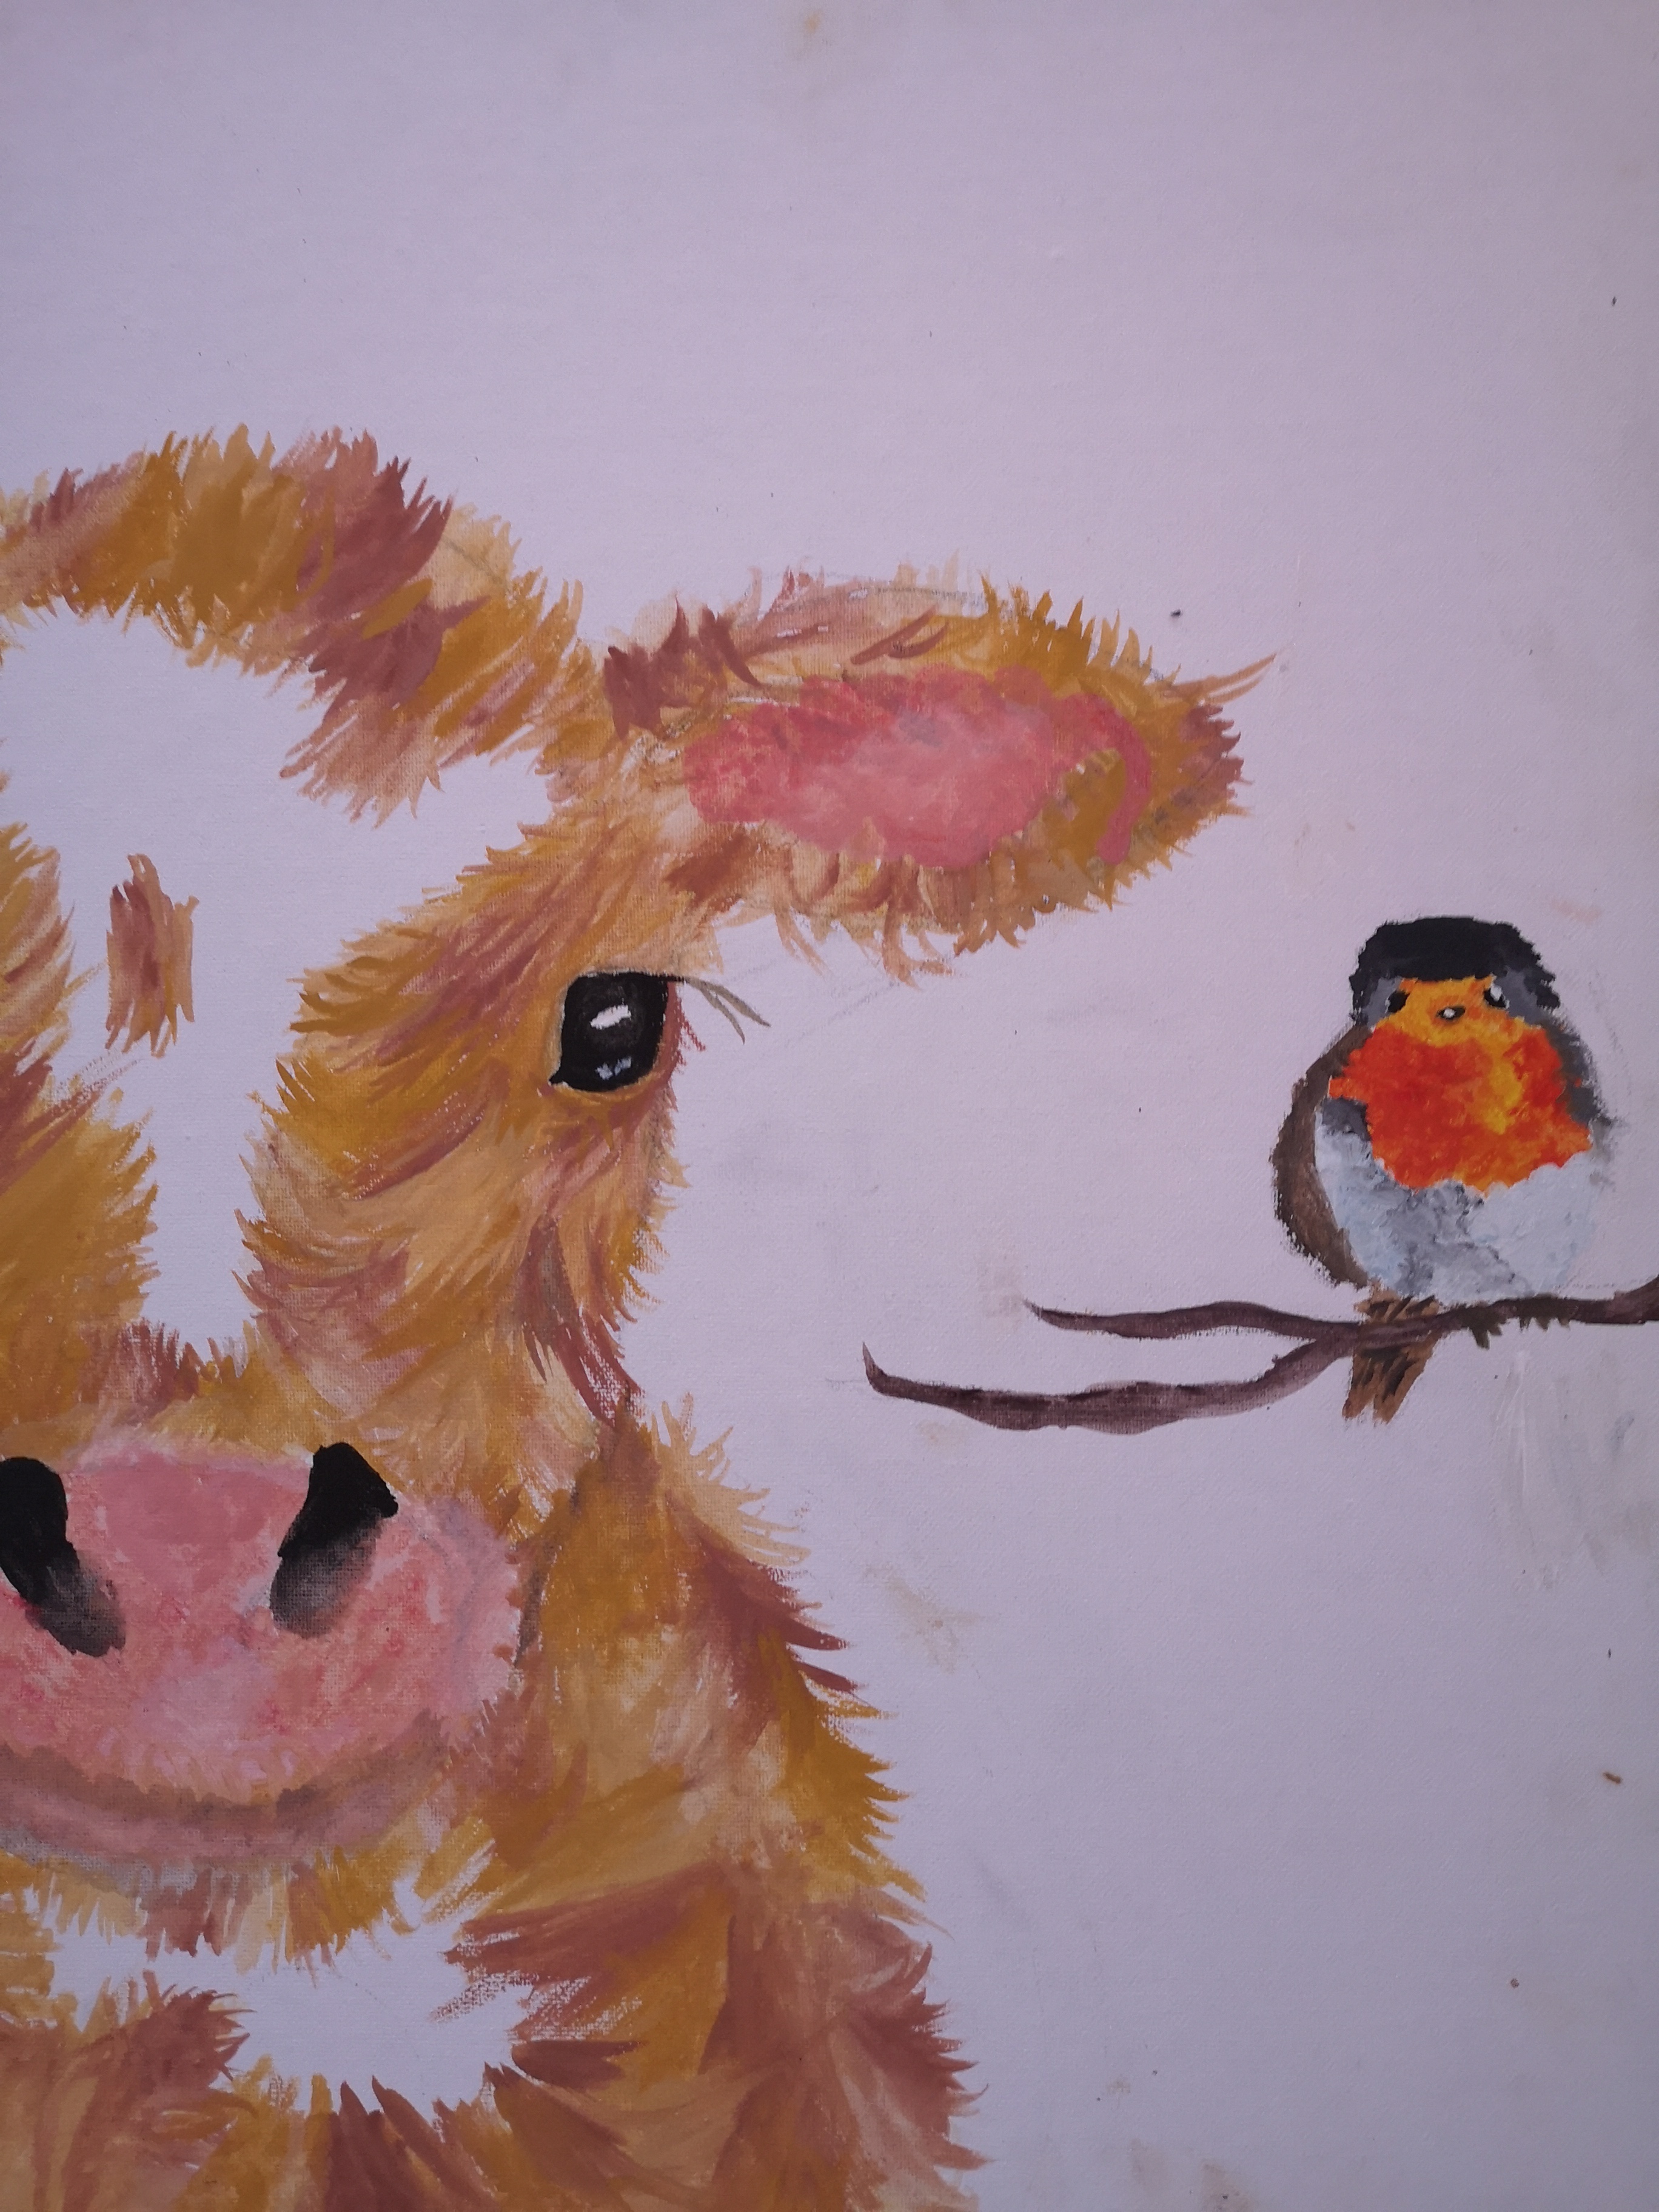 'Daisy & robin' by Shona (12) from Meath